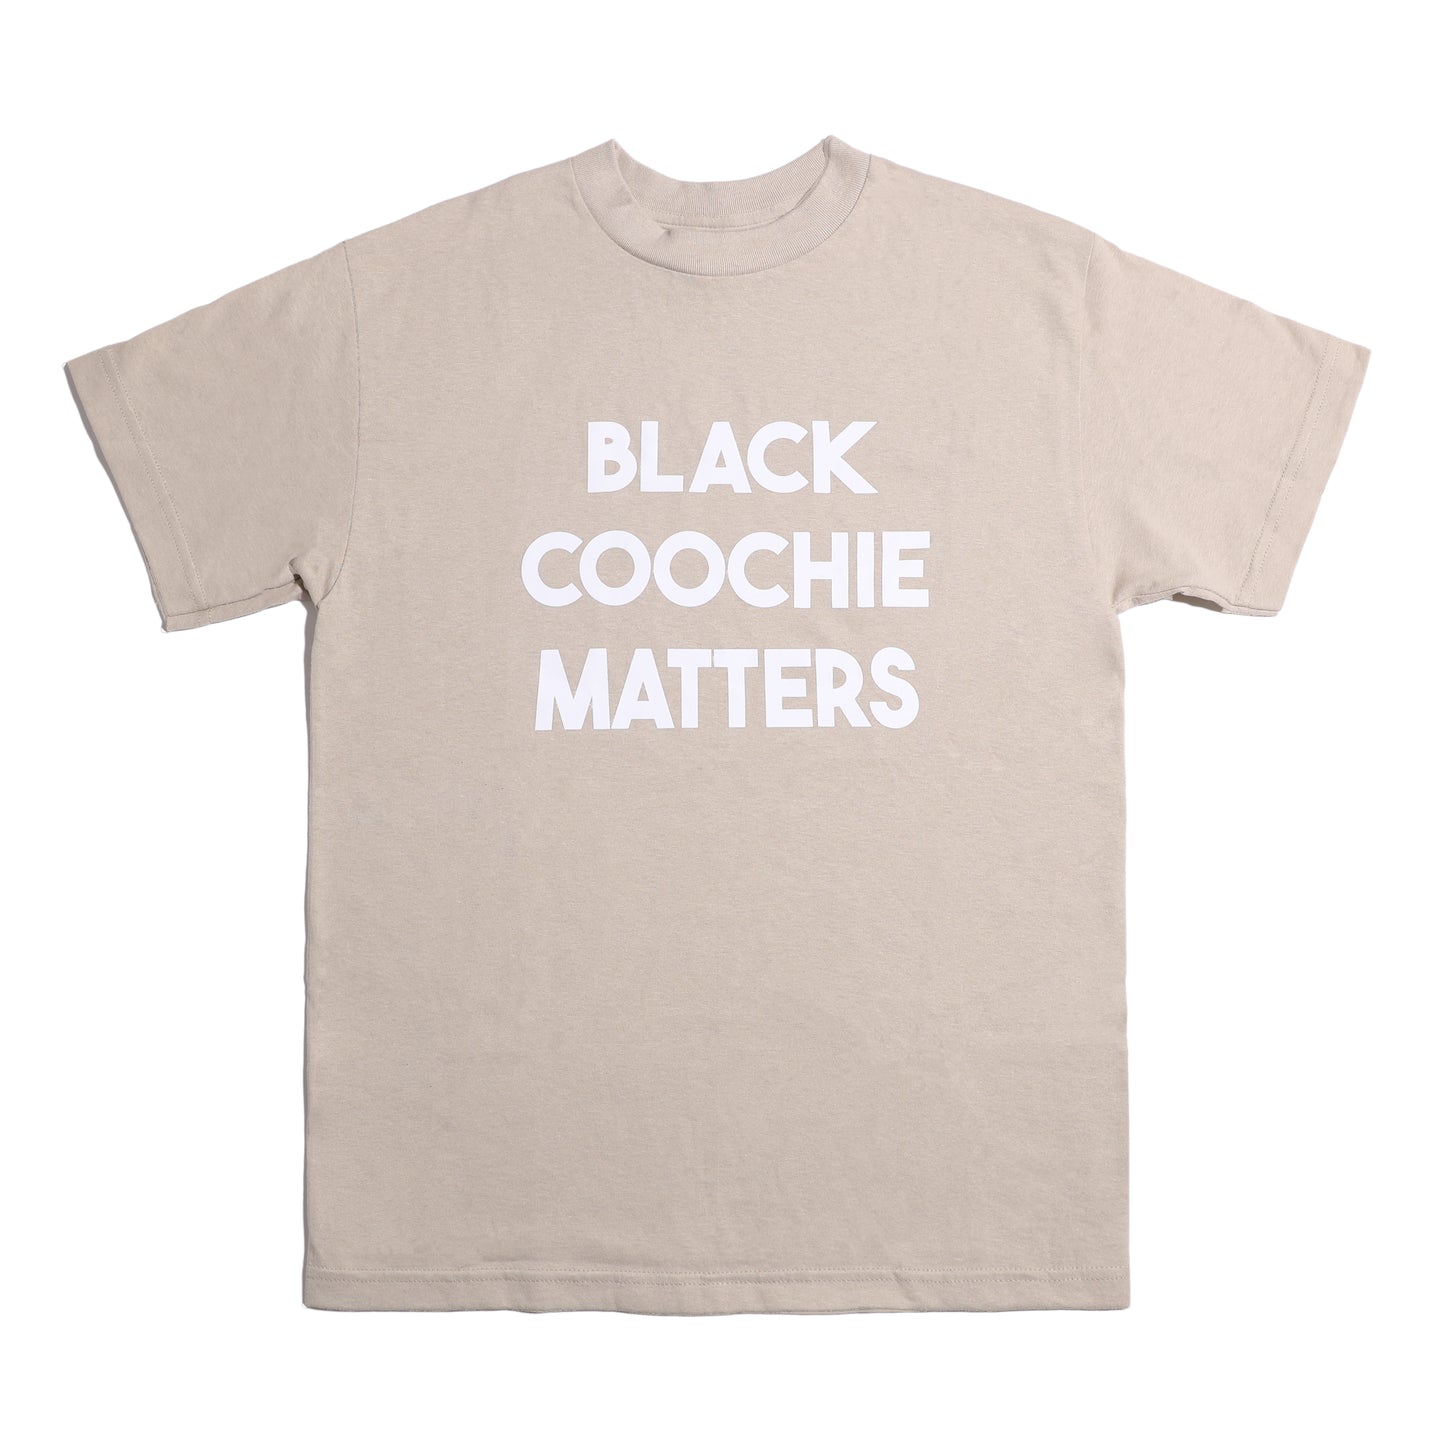 Black Coochie Matters Tan Tshirt